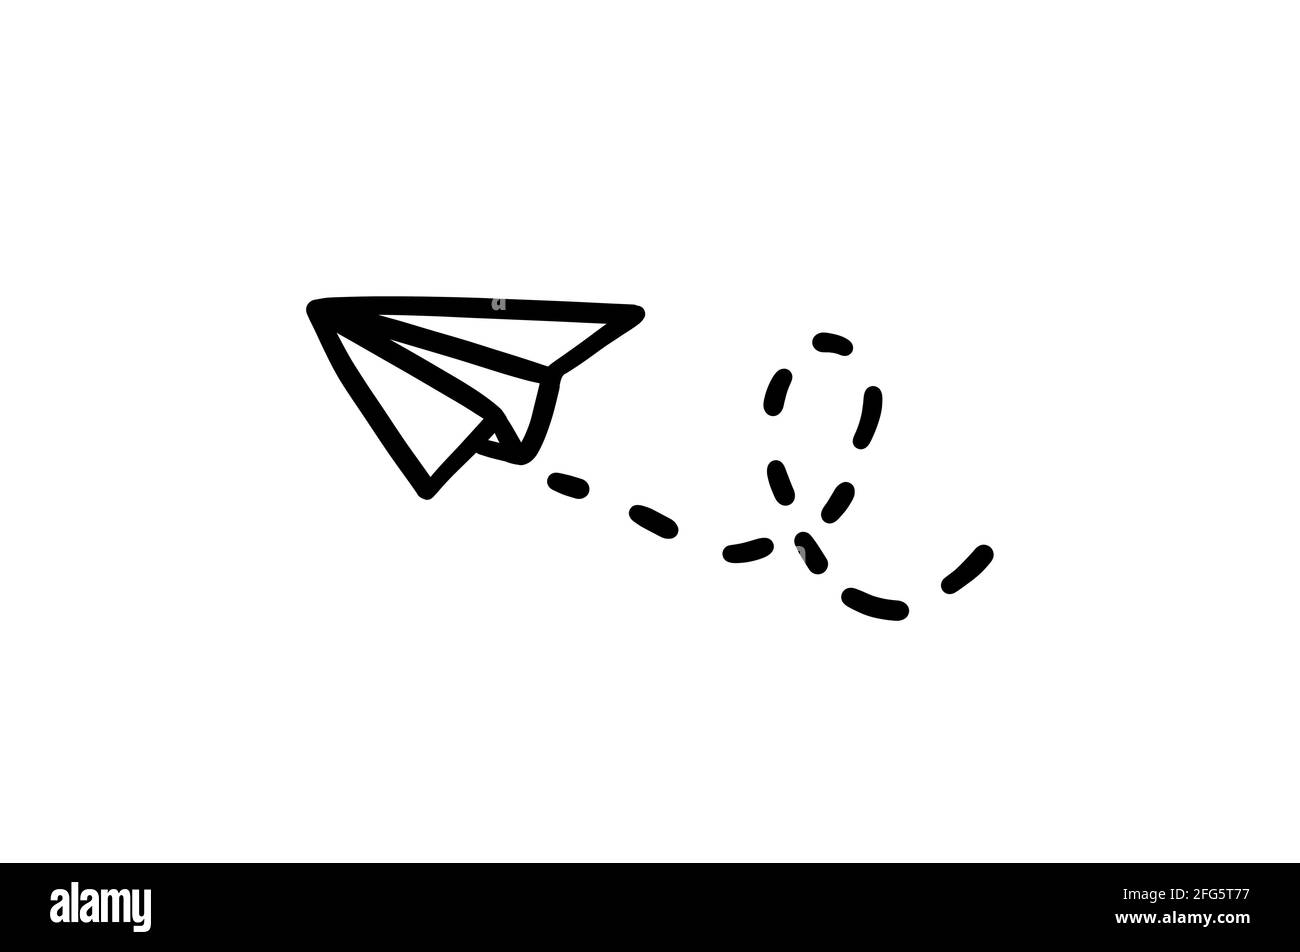 Avion en papier. Vecteur origami dandindle avion de vol. Illustration dessinée à la main. Illustration de Vecteur